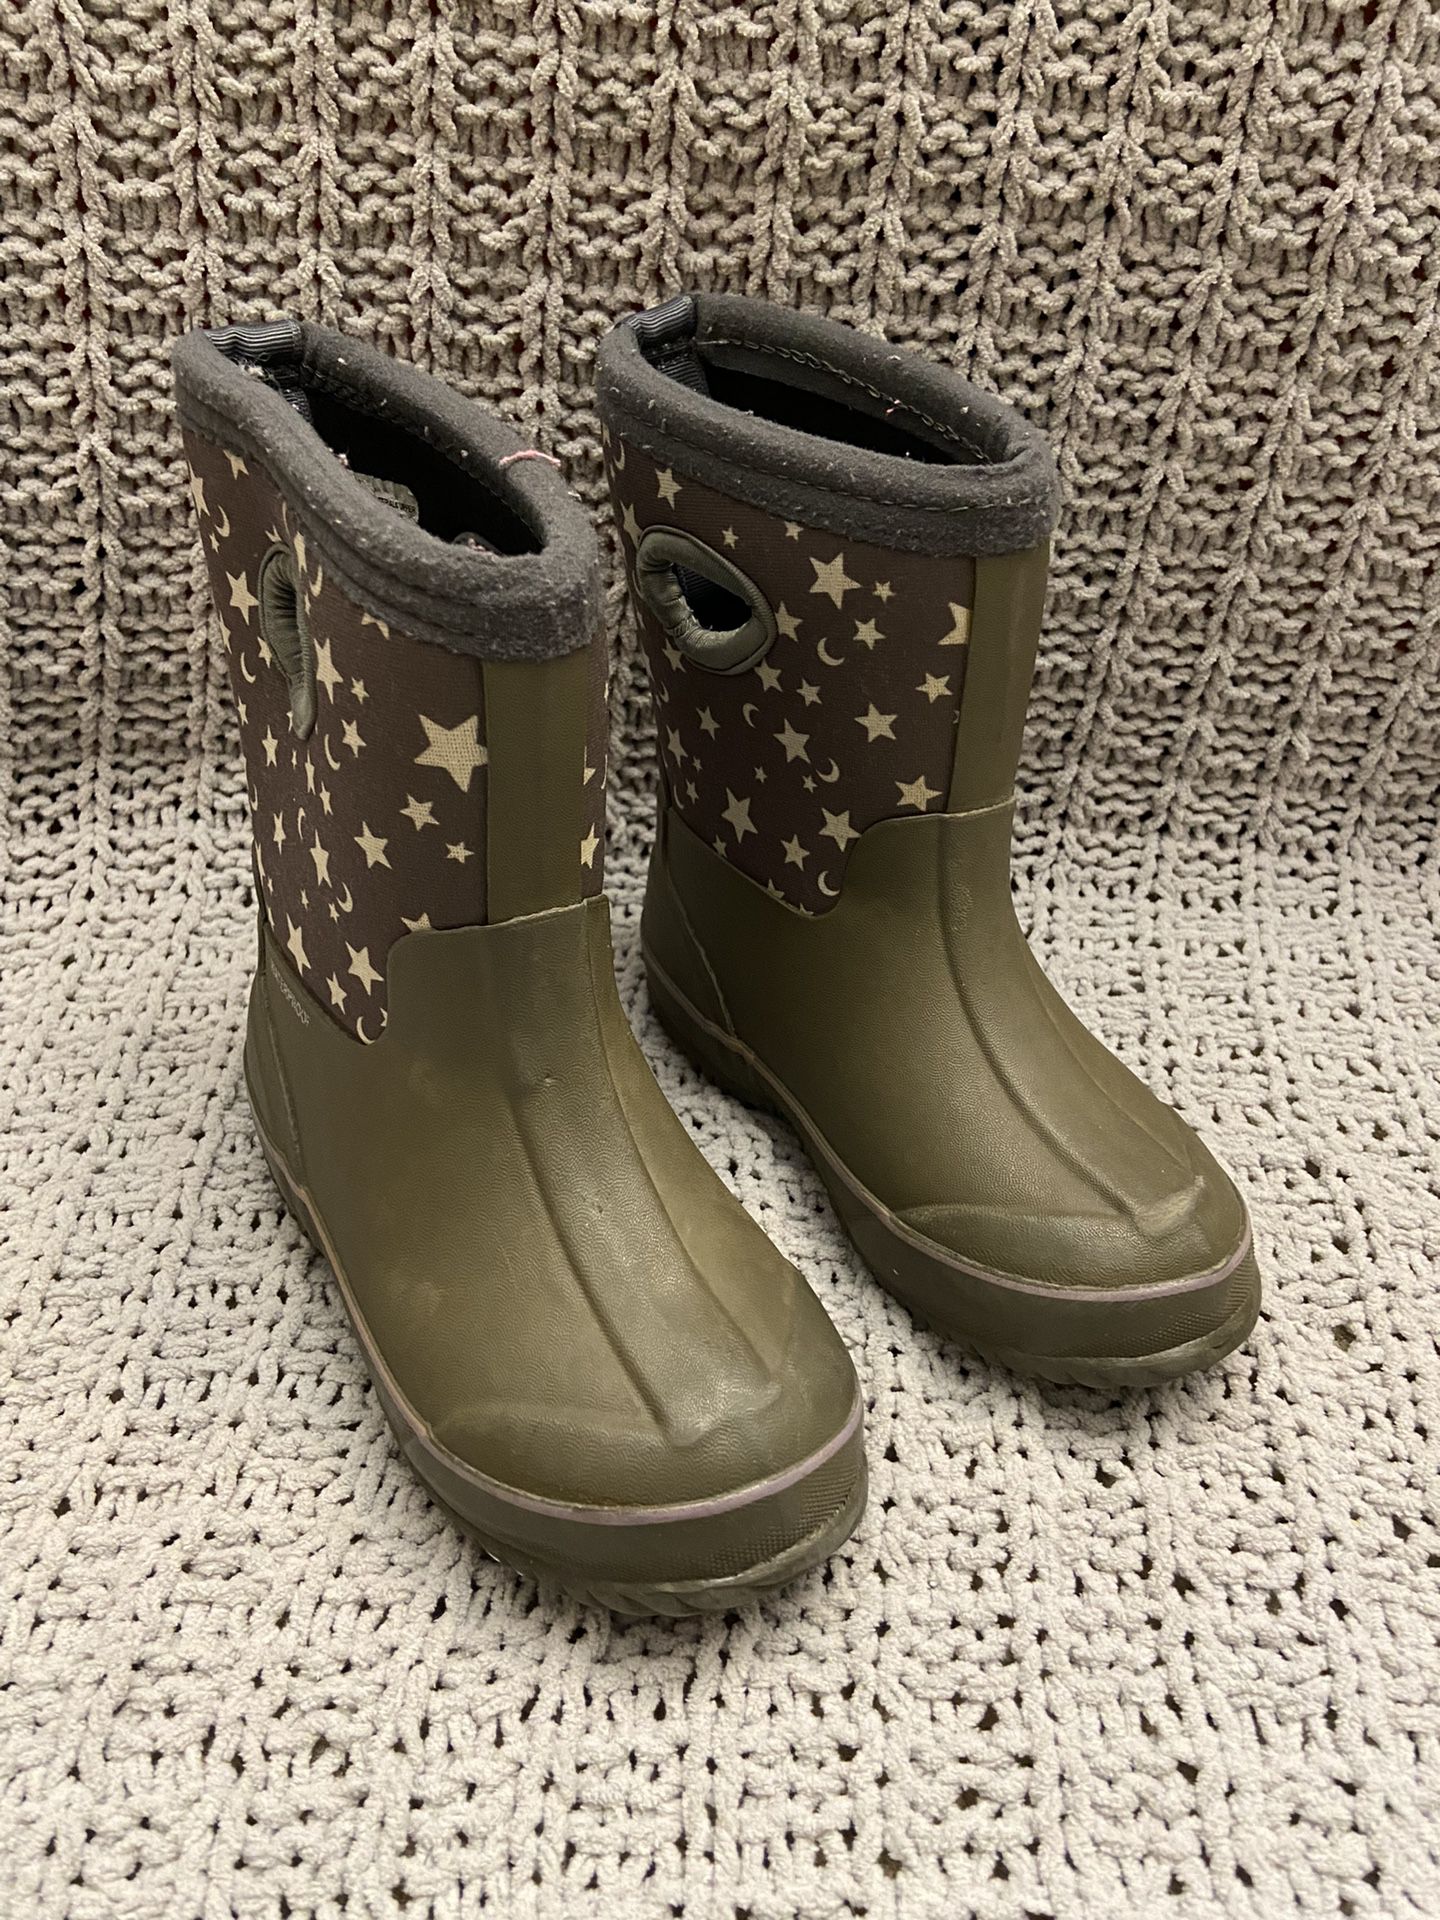 Girls Rain Boots Size 9